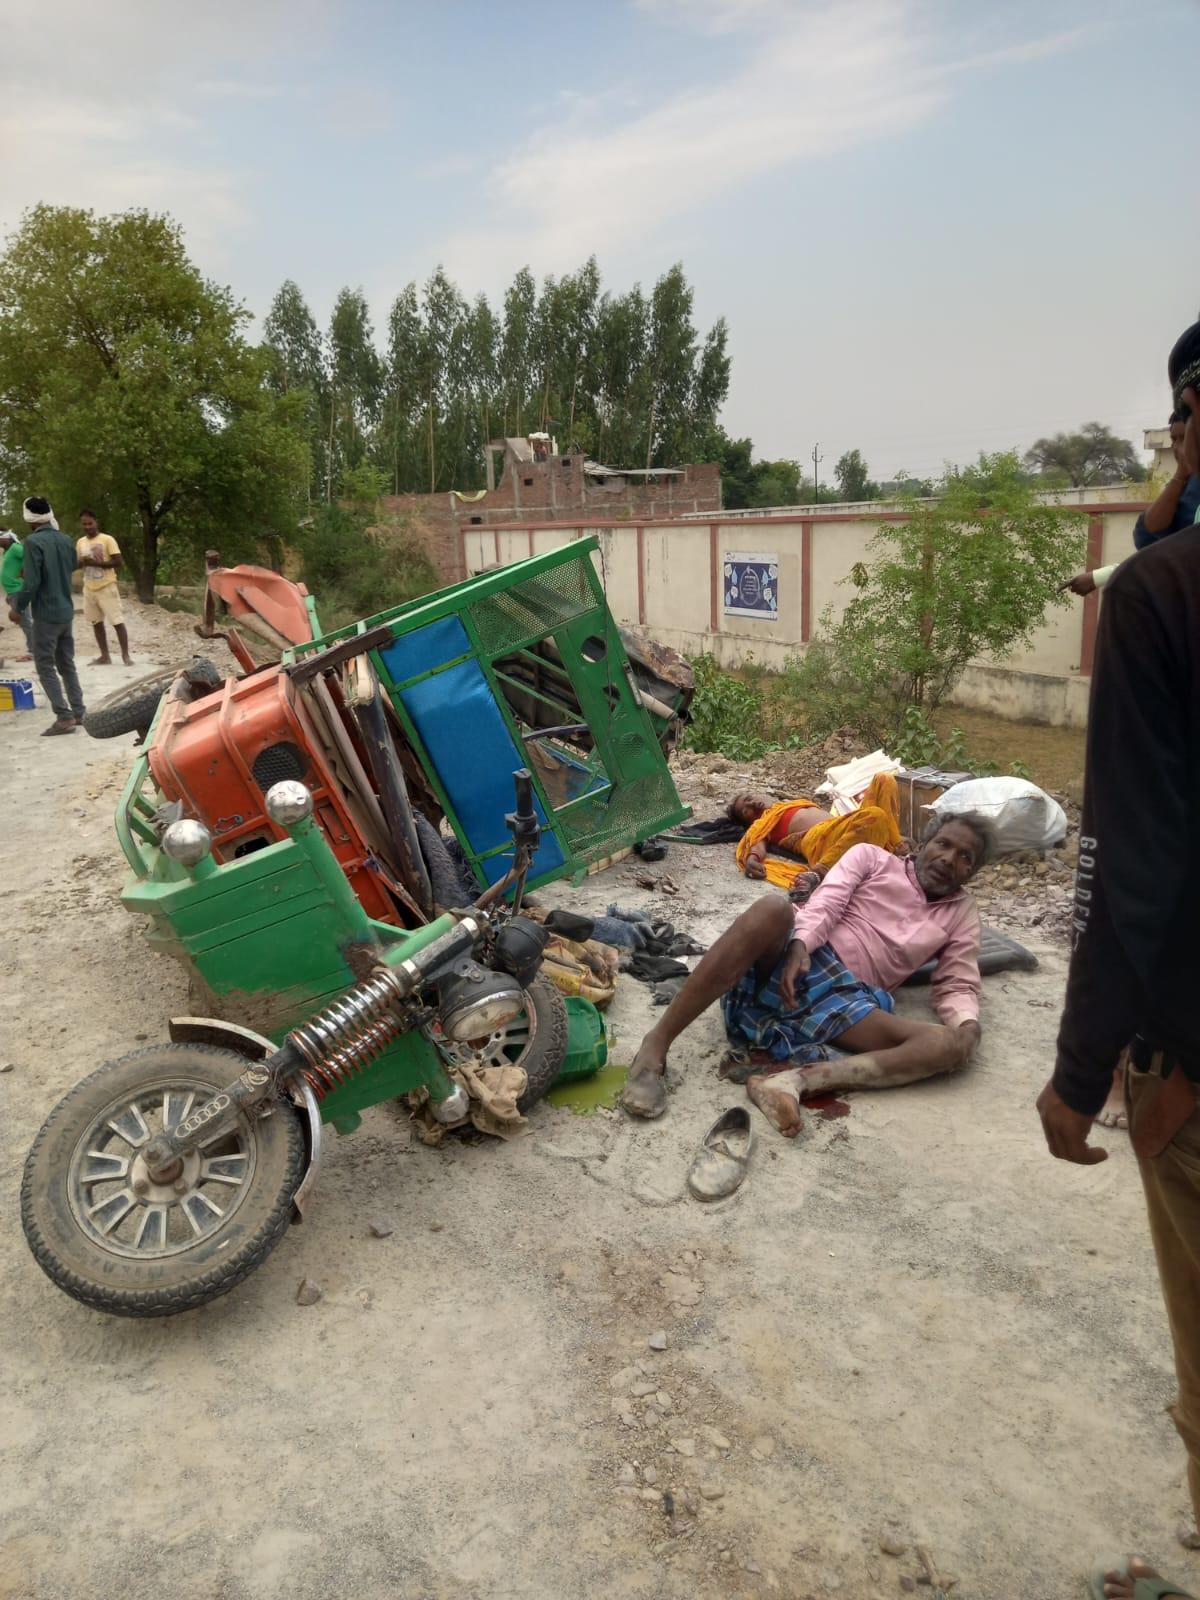 ई-रिक्शा में ट्रक ने मारी टक्कर, सात लोग घायल